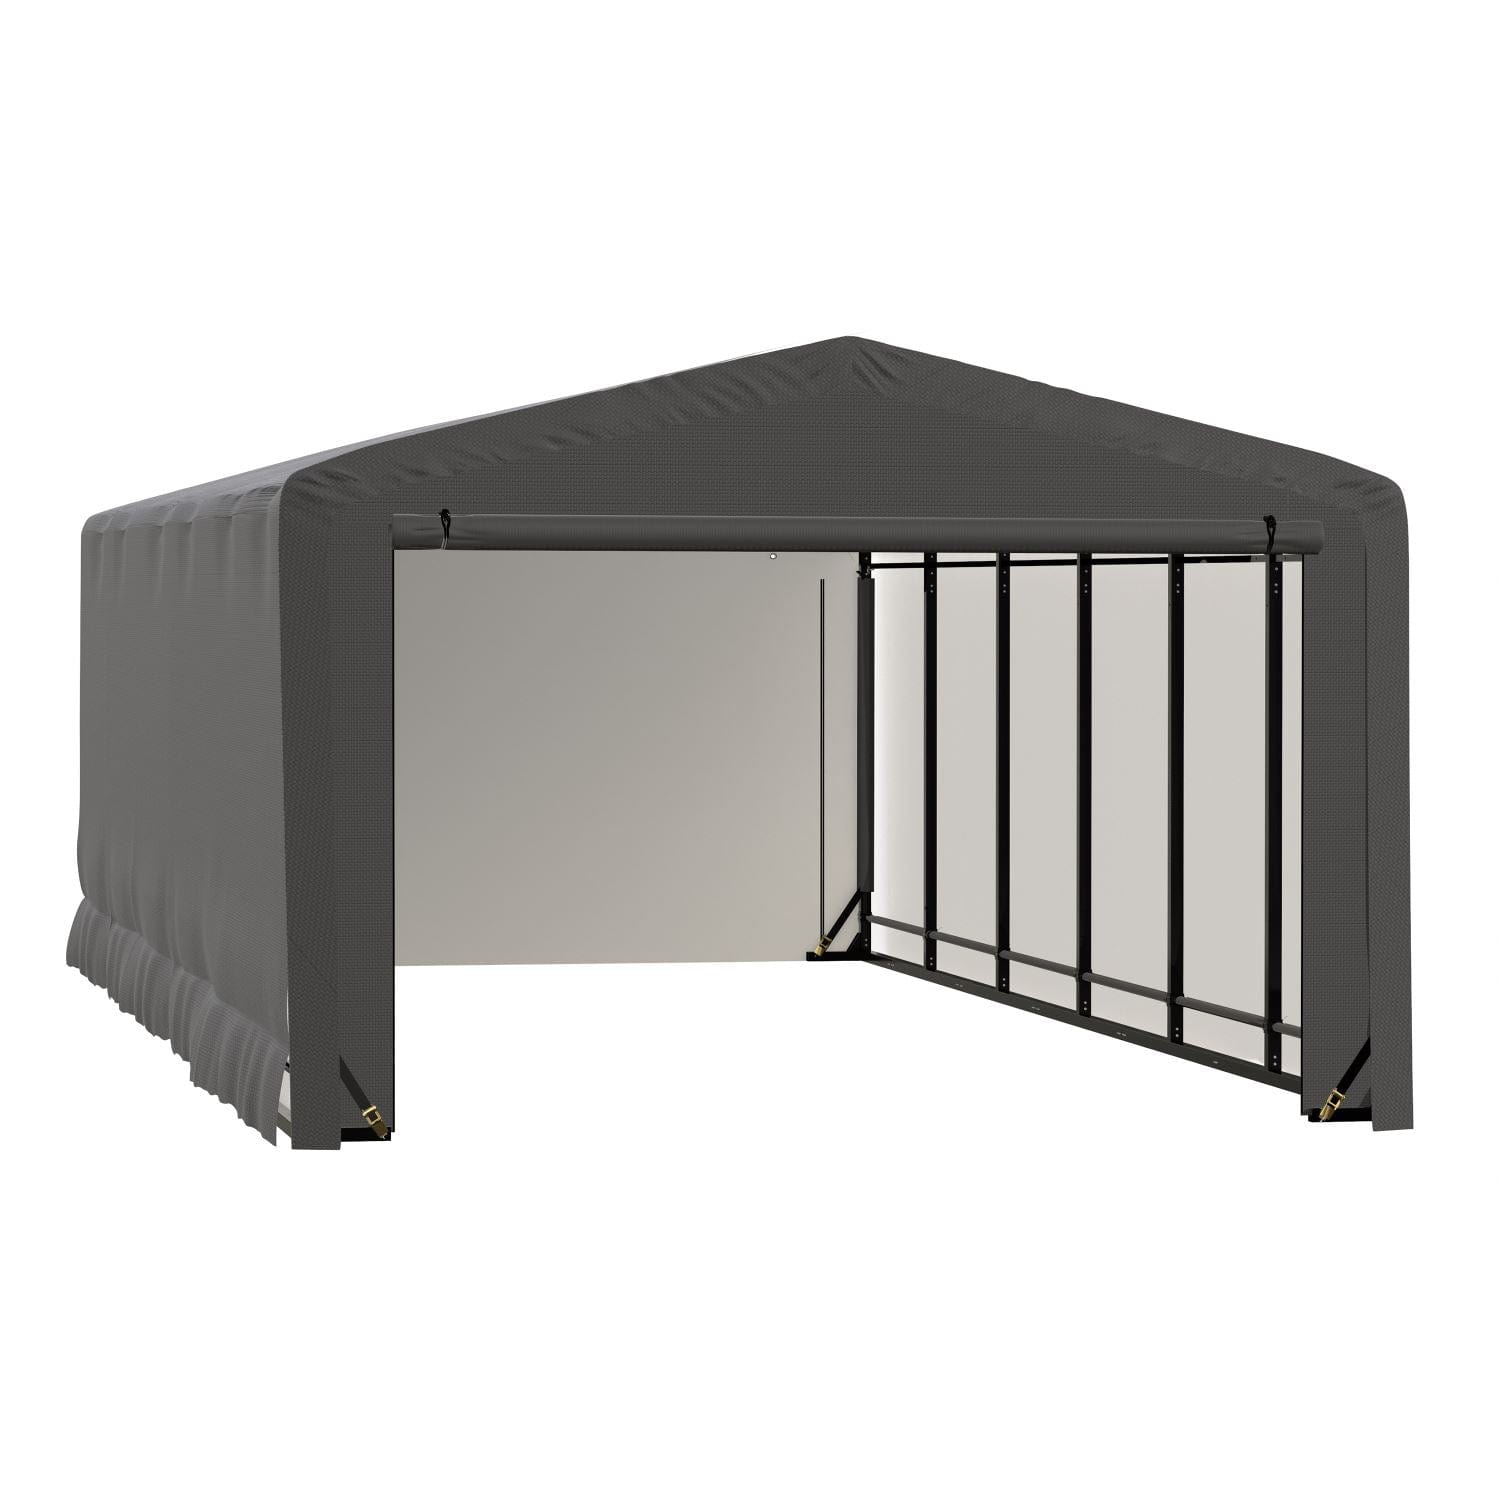 ShelterLogic Portable Garage ShelterLogic | ShelterTube Wind and Snow-Load Rated Garage 12x23x8 Gray SQAACC0103C01202308